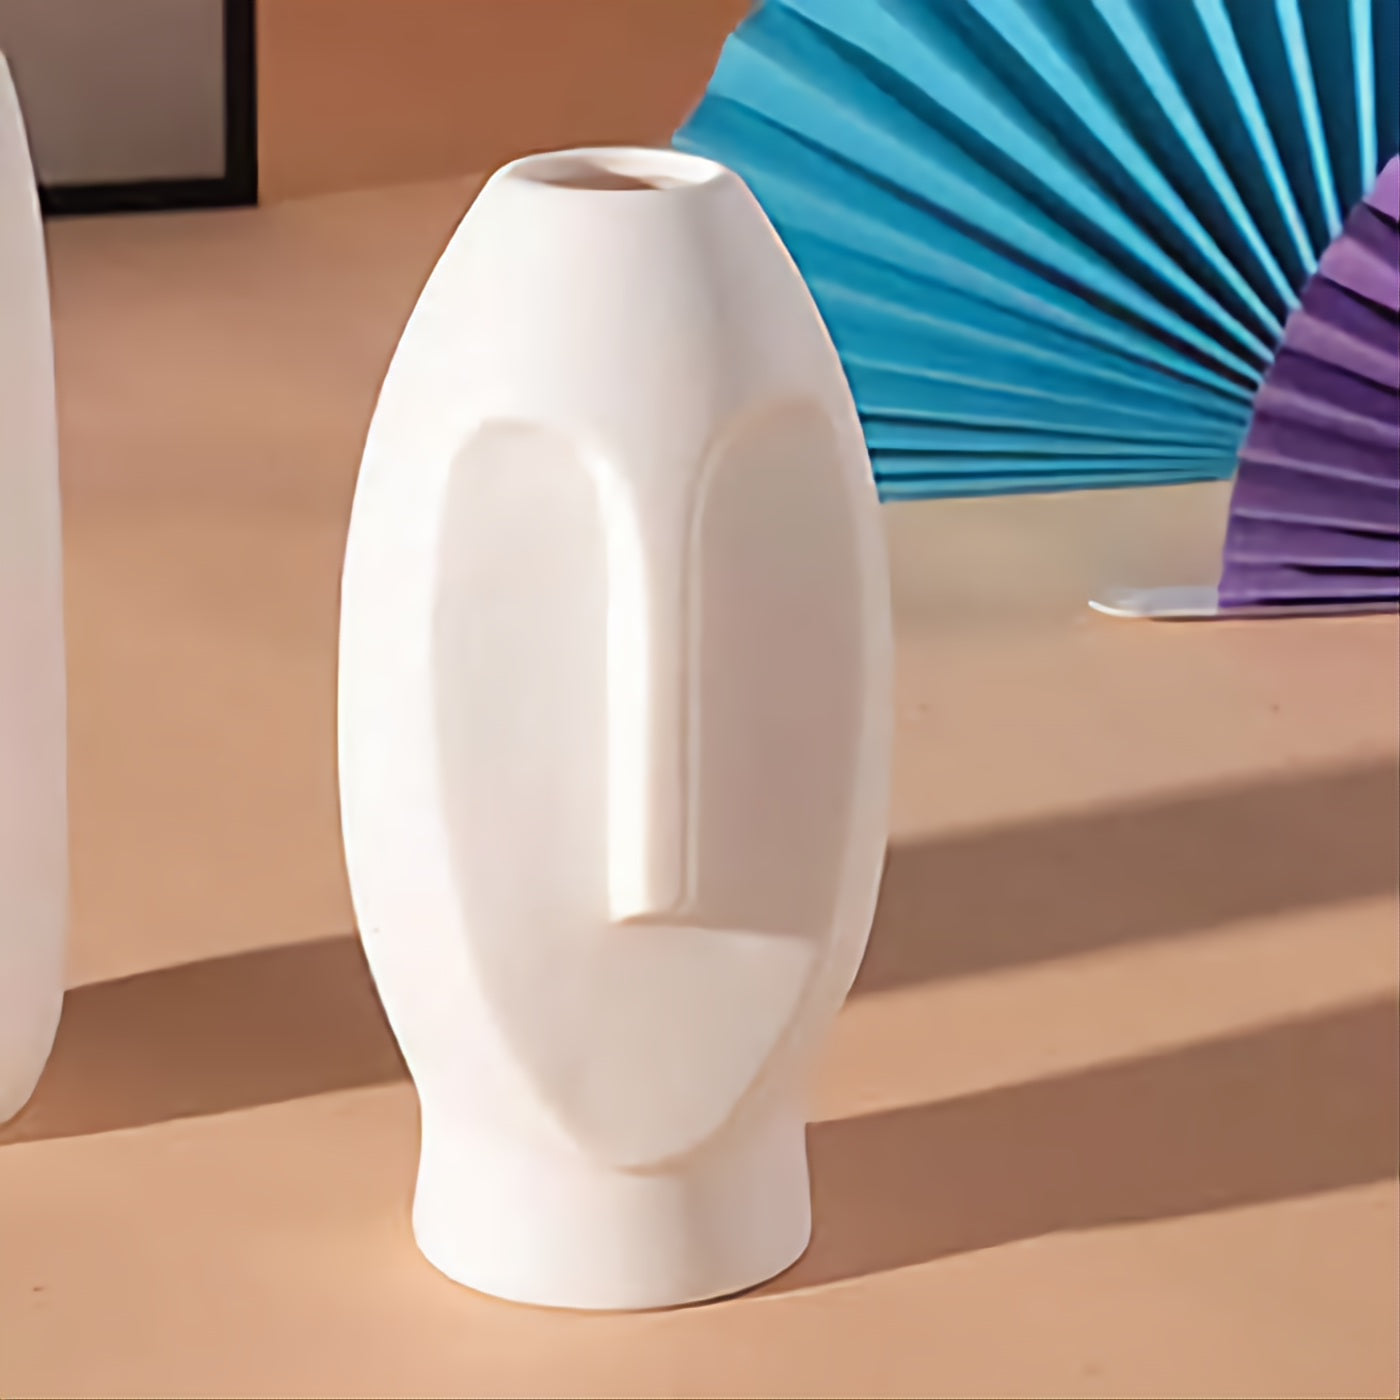 Ceramics Flower Vase with Face Design